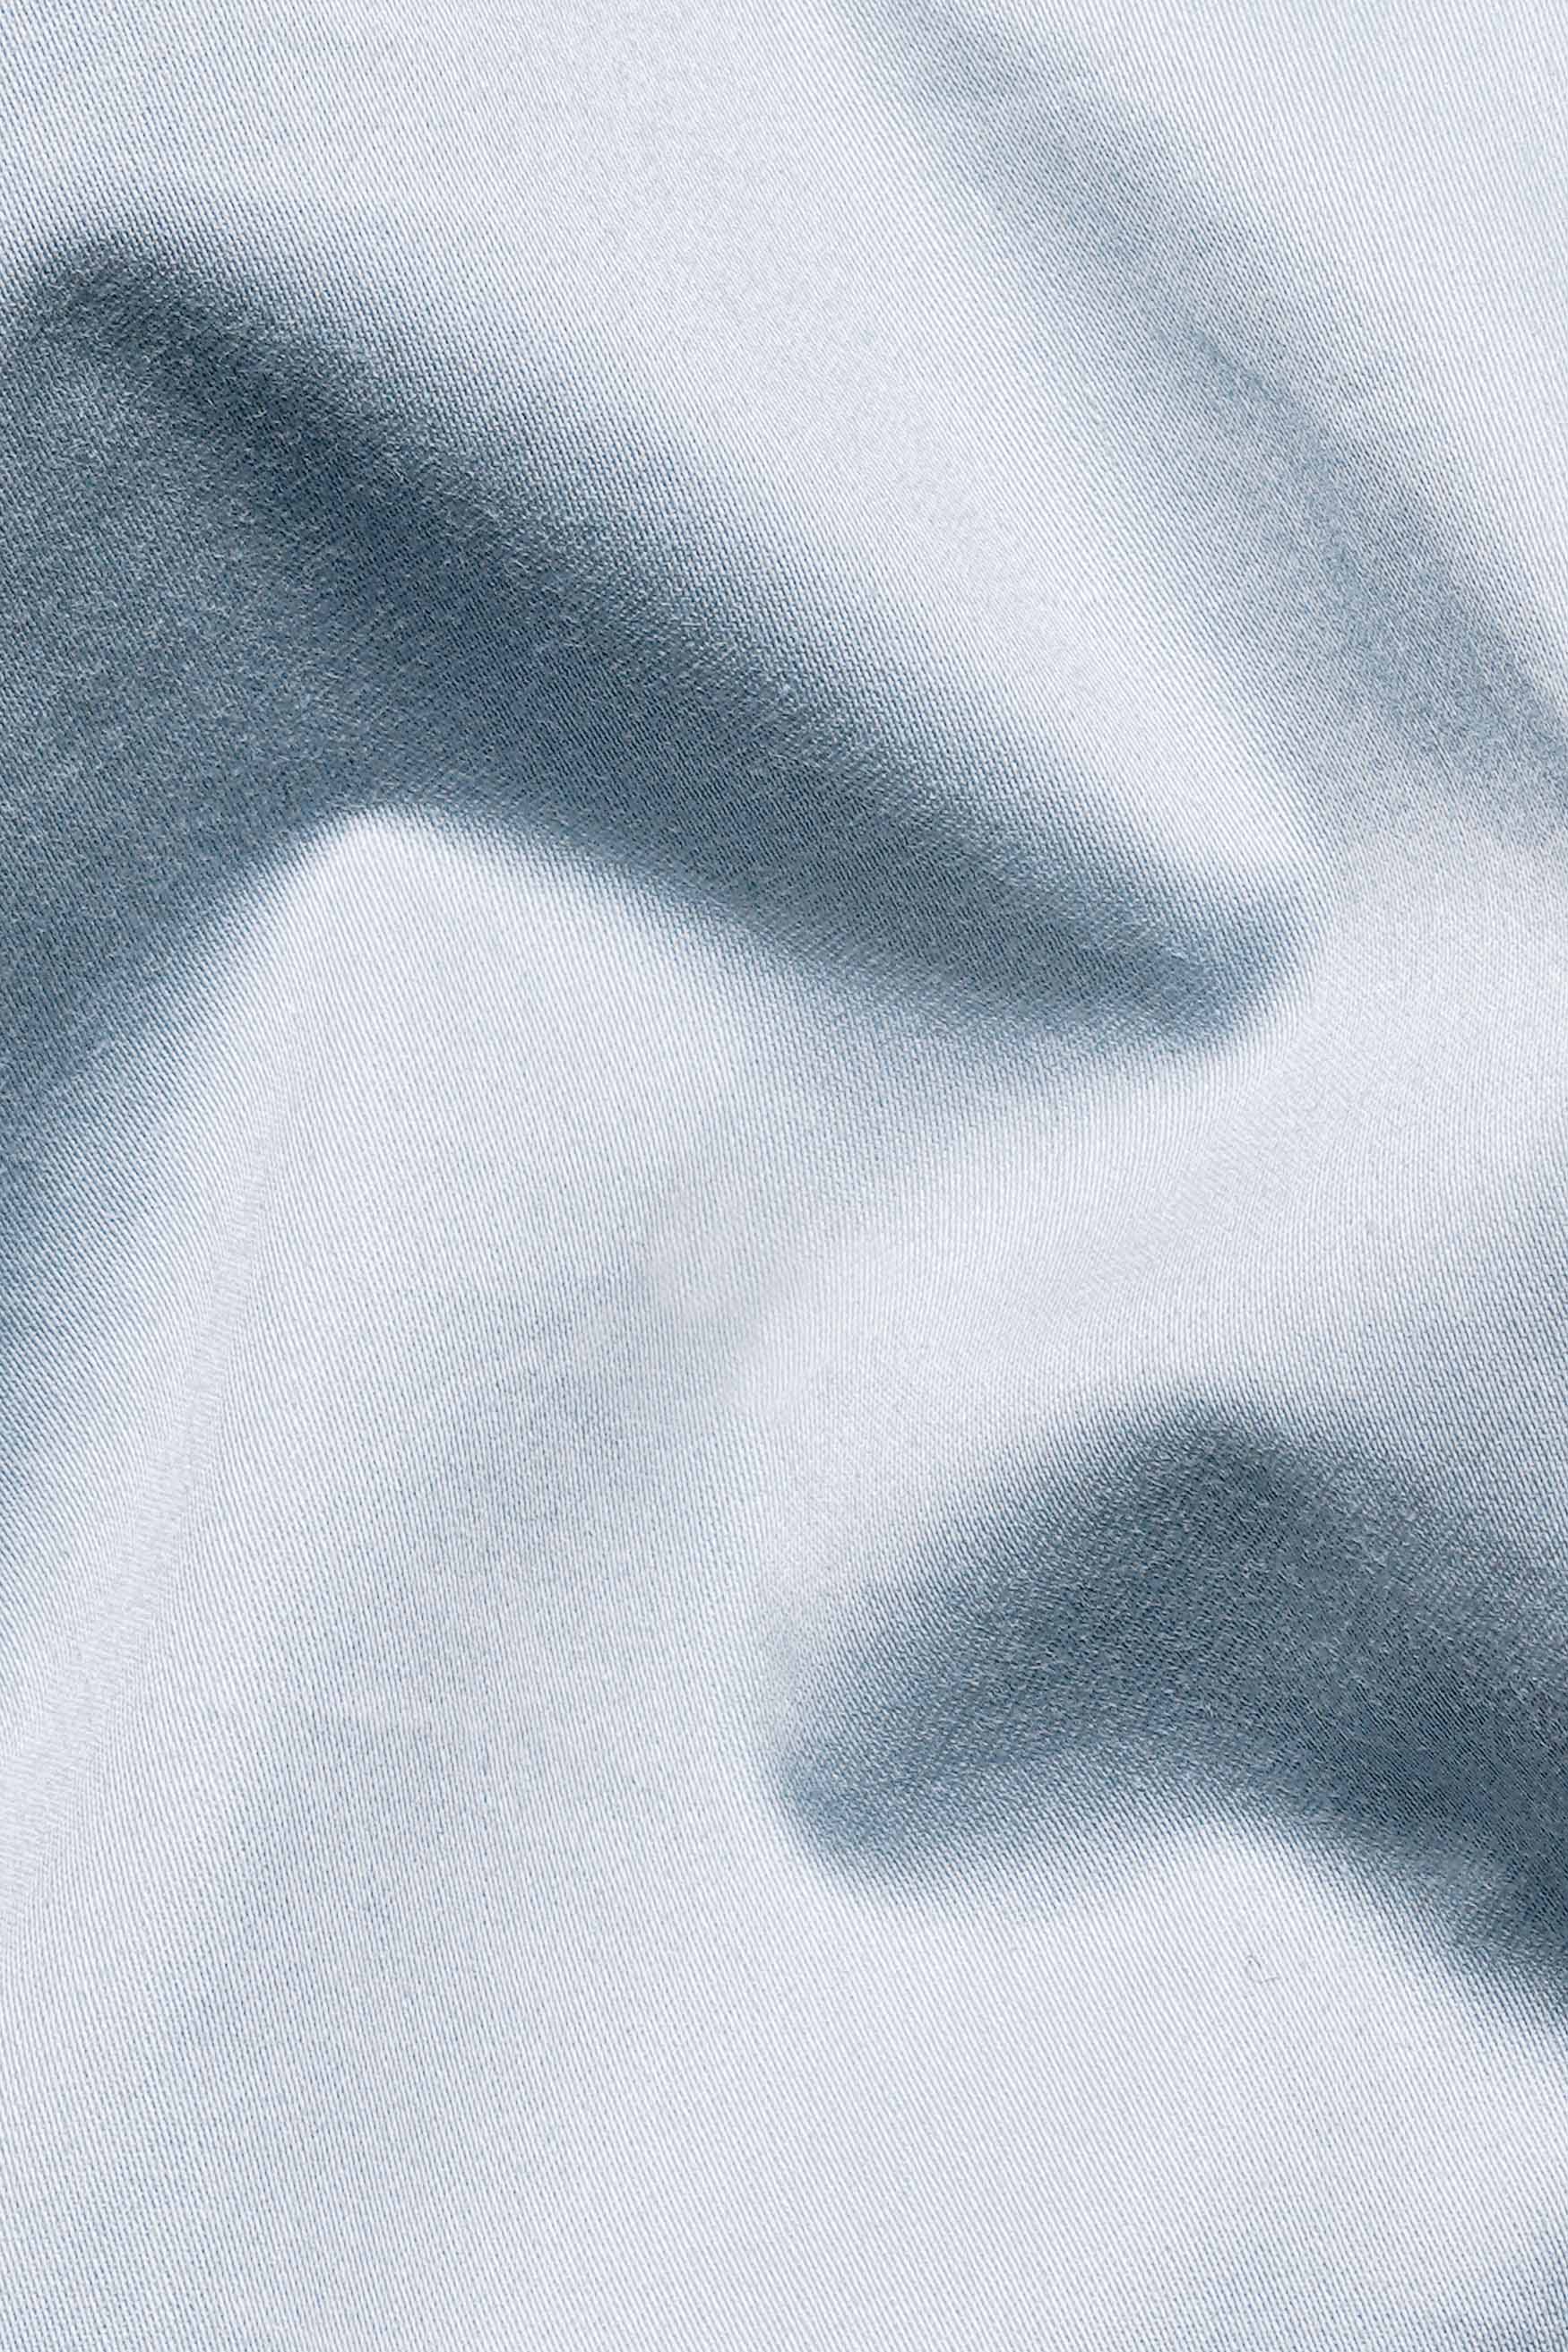 Ghost Blue Subtle Sheen Super Soft Premium Cotton Tuxedo Shirt